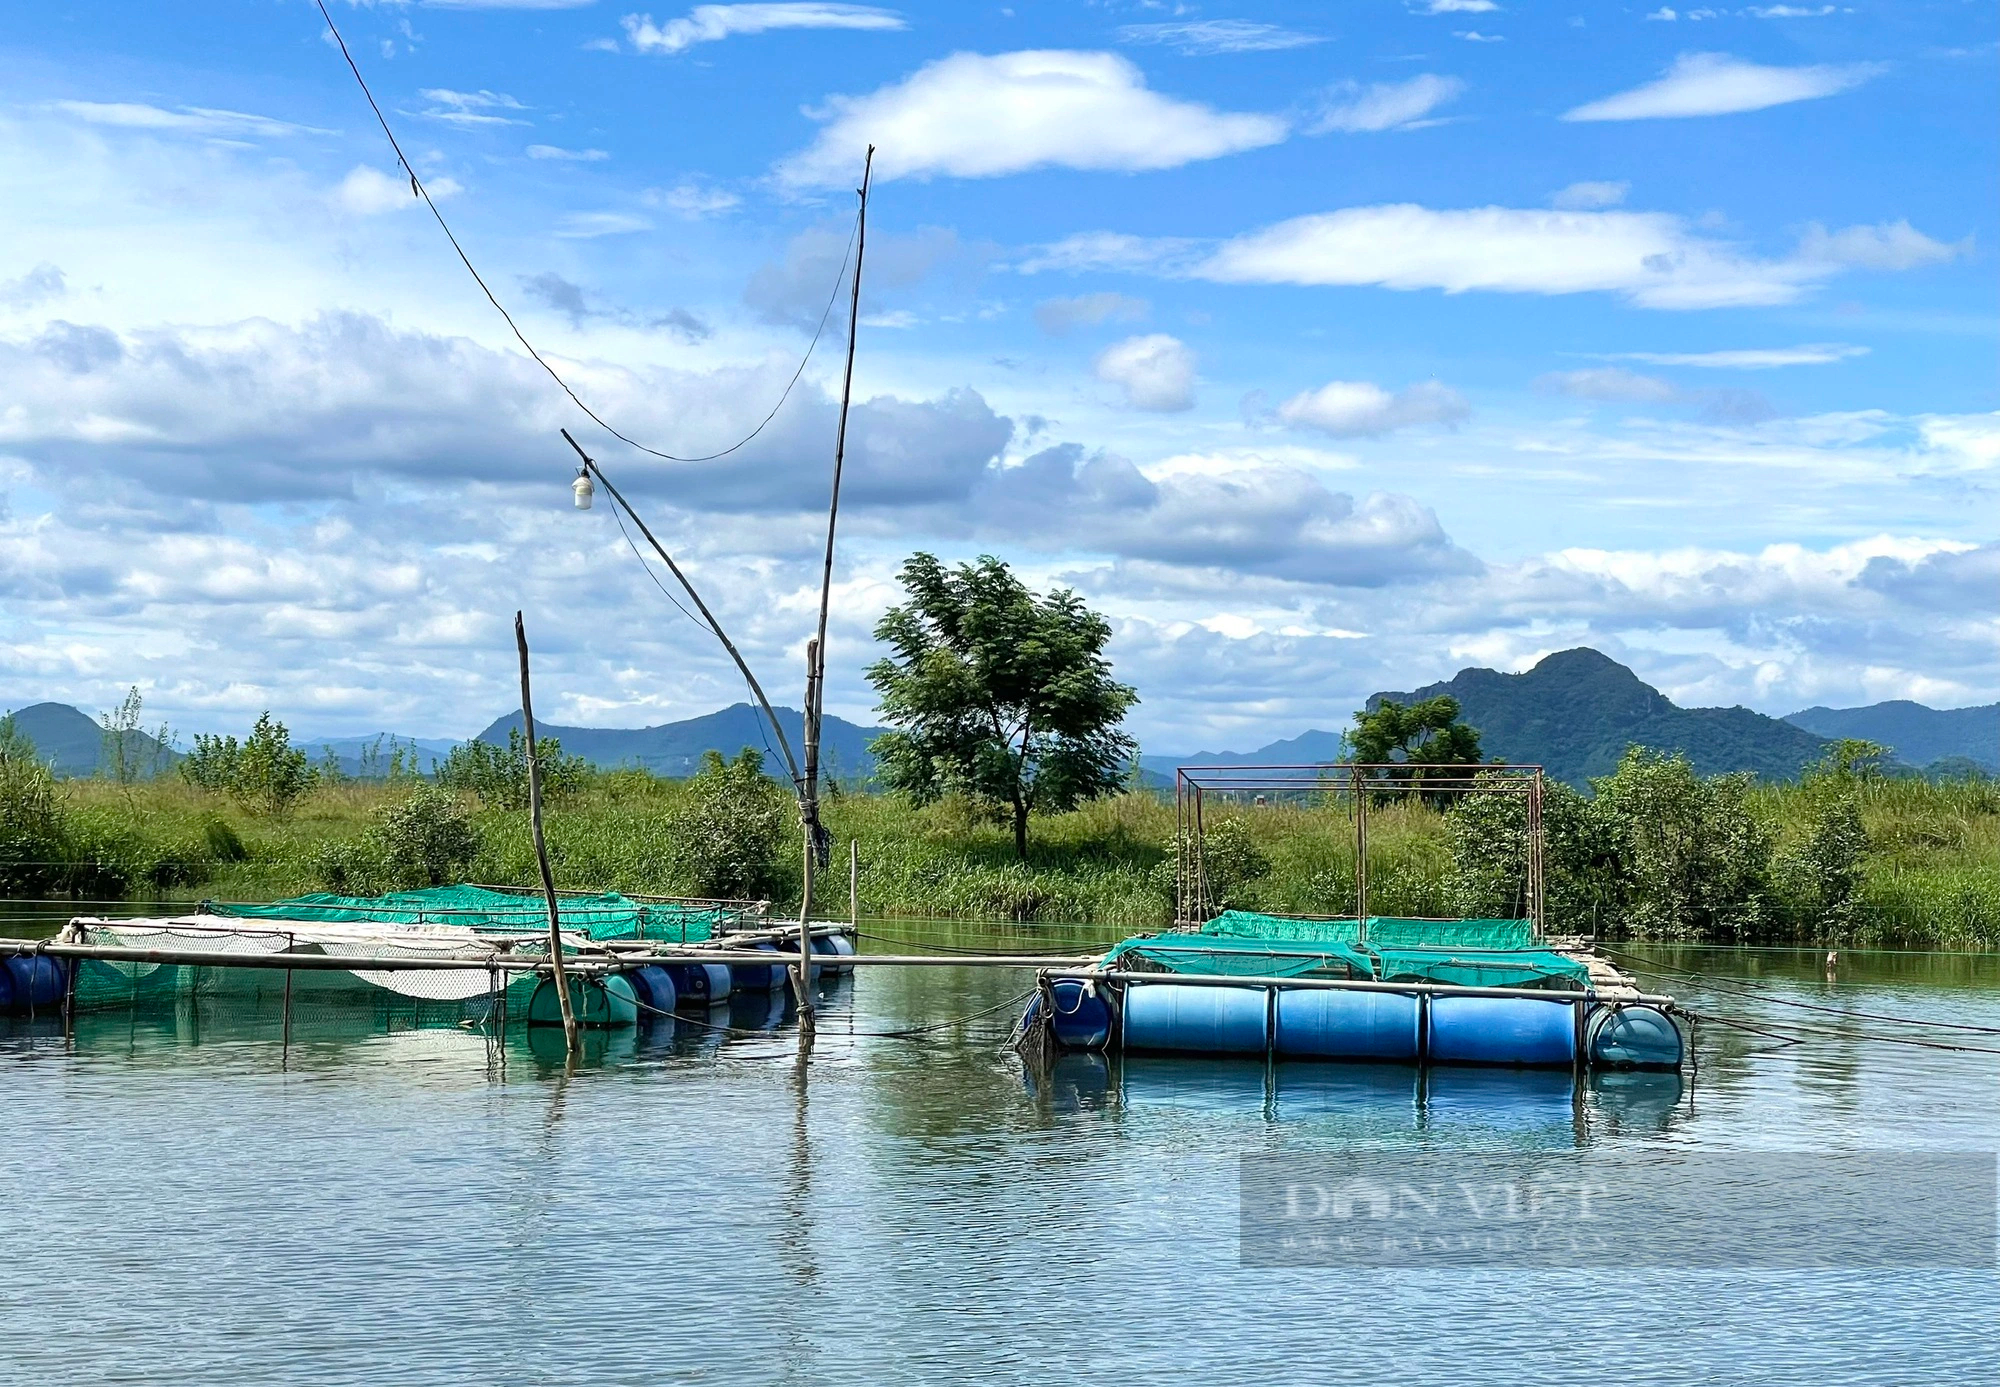 Nuôi cá chẽm, cá dìa, cua ngon ở một ngã 3 sông nổi tiếng ở Quảng Bình, tưởng liều mà hóa hay- Ảnh 6.